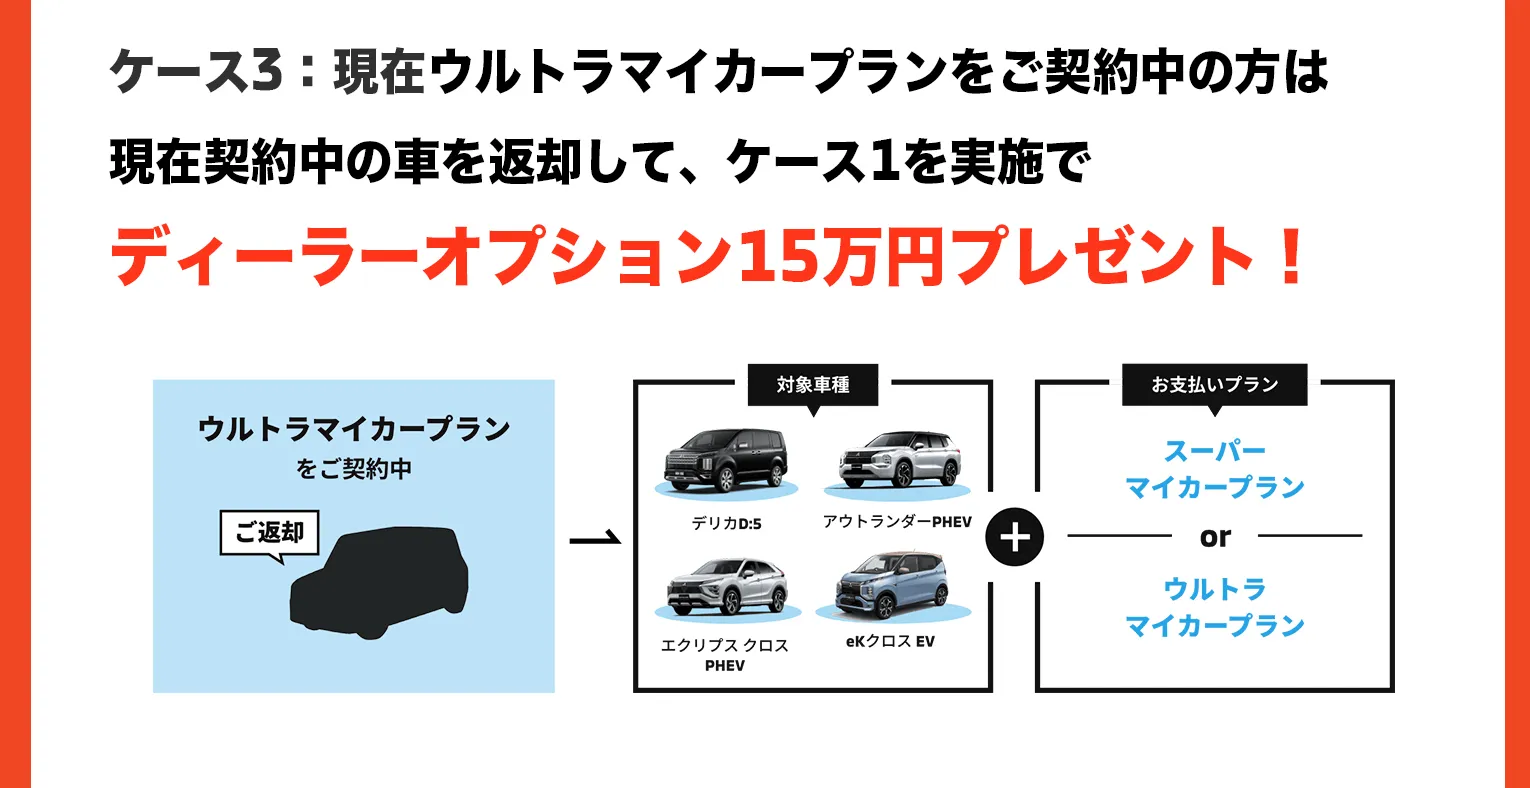 現在ウルトラマイカープランをご契約中の方は現在契約中の車を返却して、ケース1を実施でディーラーオプション15万円プレゼント！